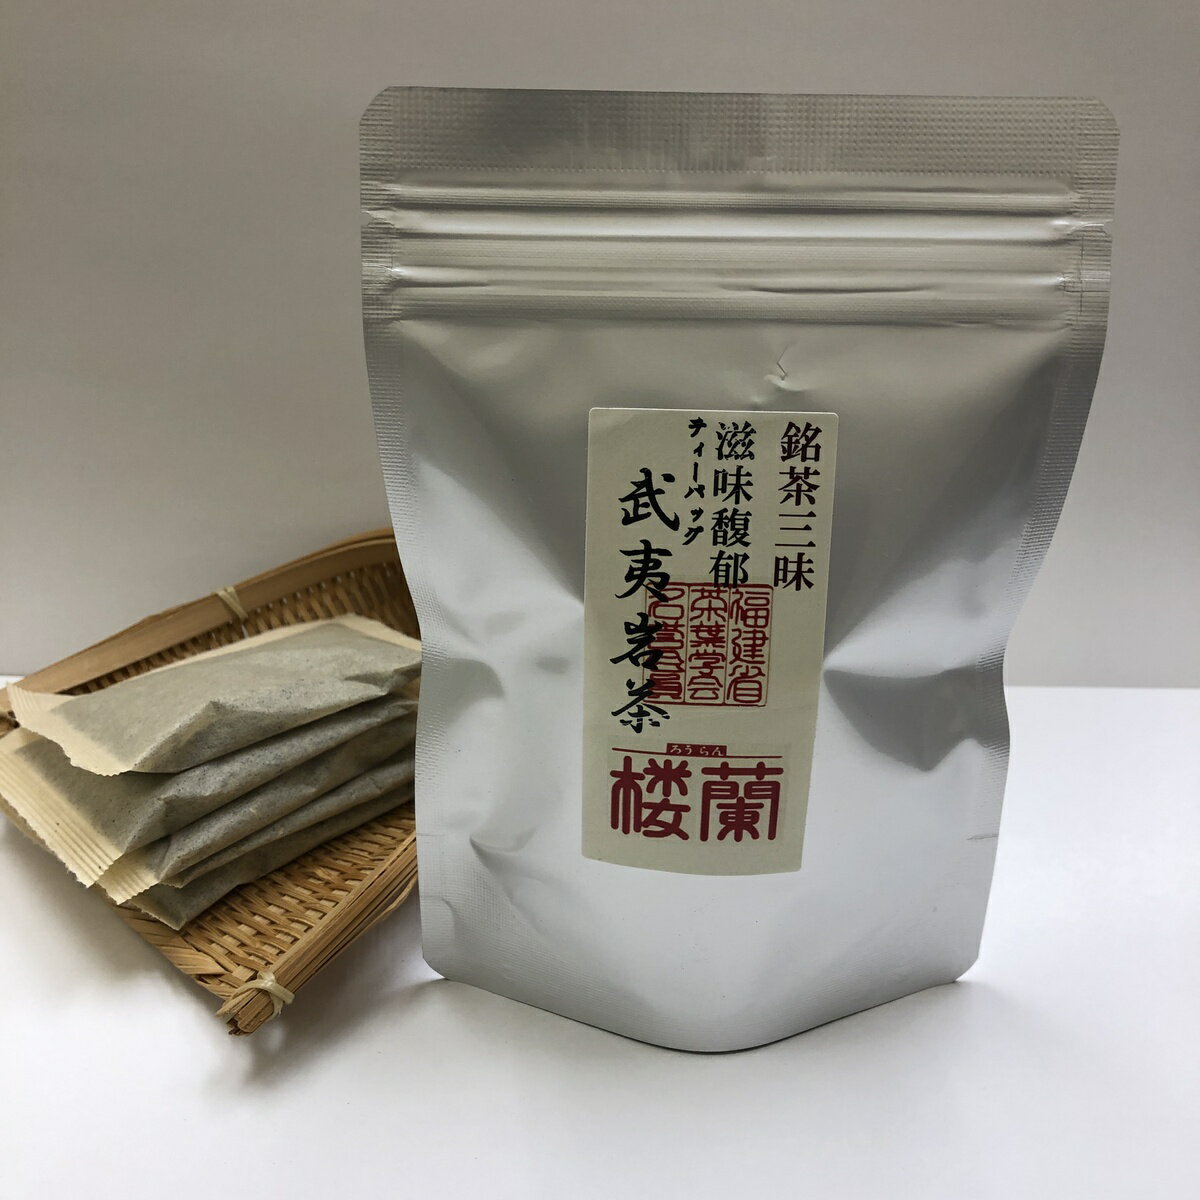 銘茶三昧ティーバック武夷岩茶 30g(5